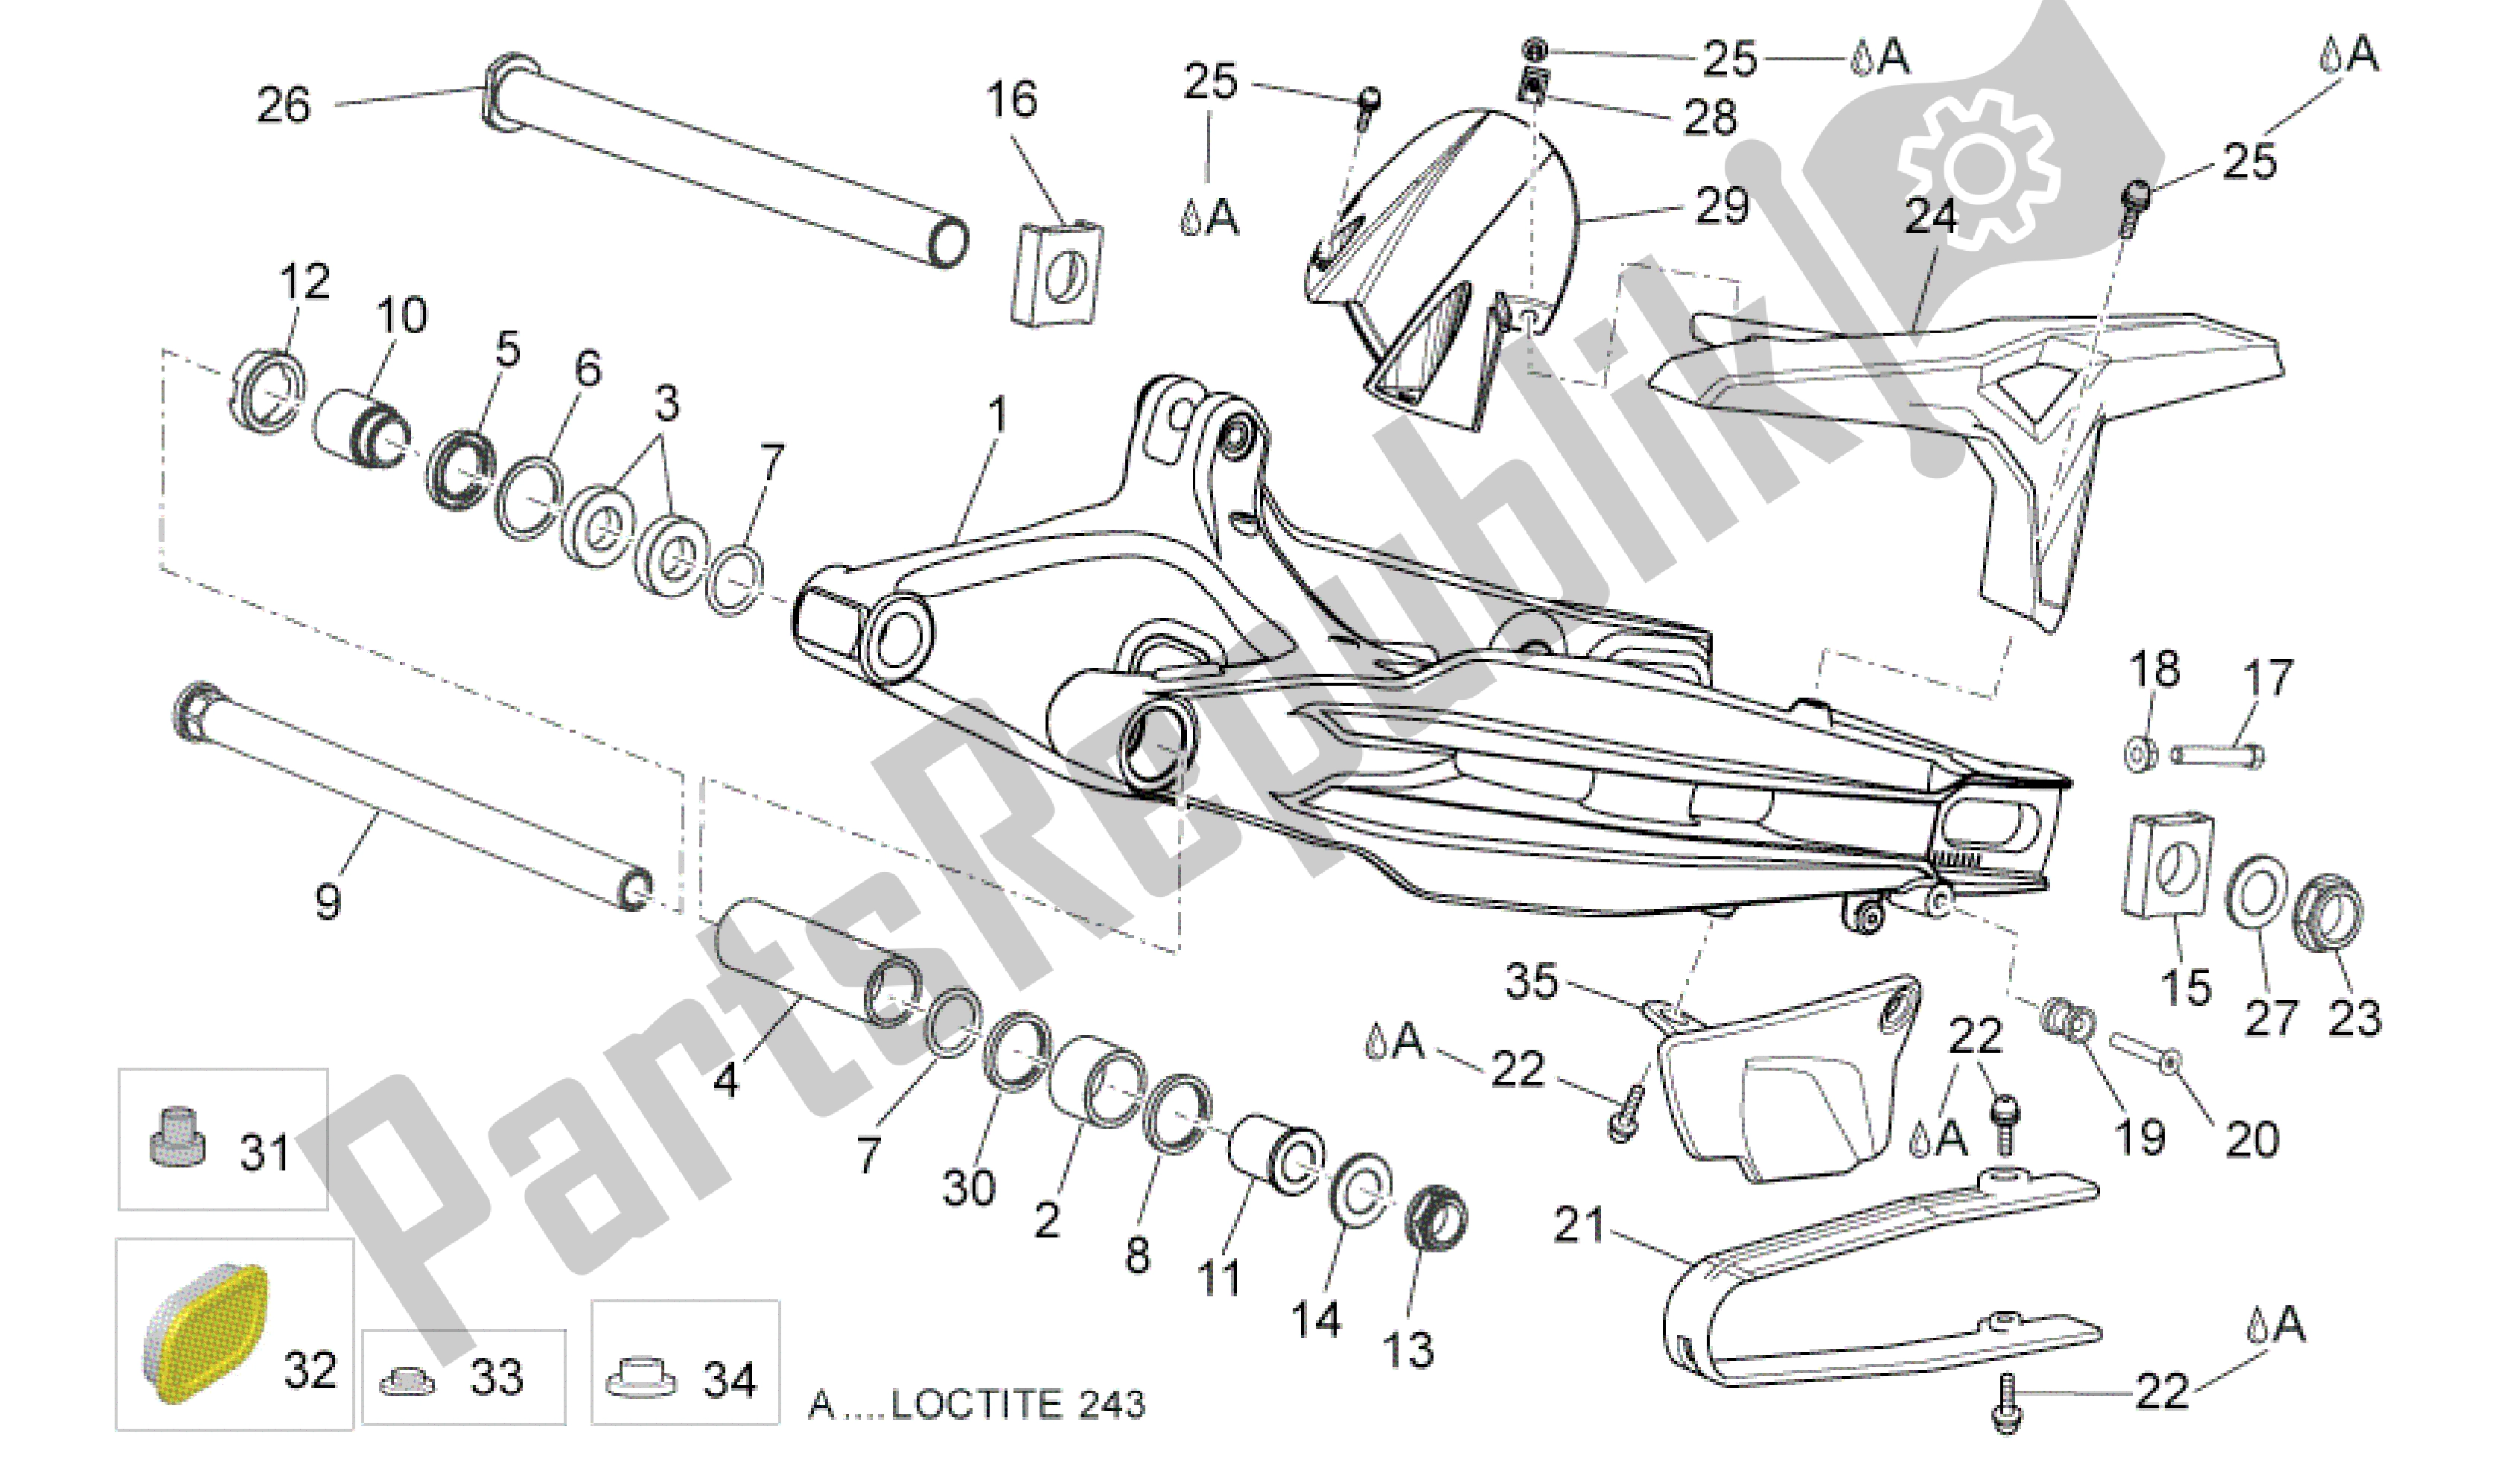 All parts for the Swing Arm of the Aprilia Dorsoduro 750 2008 - 2011